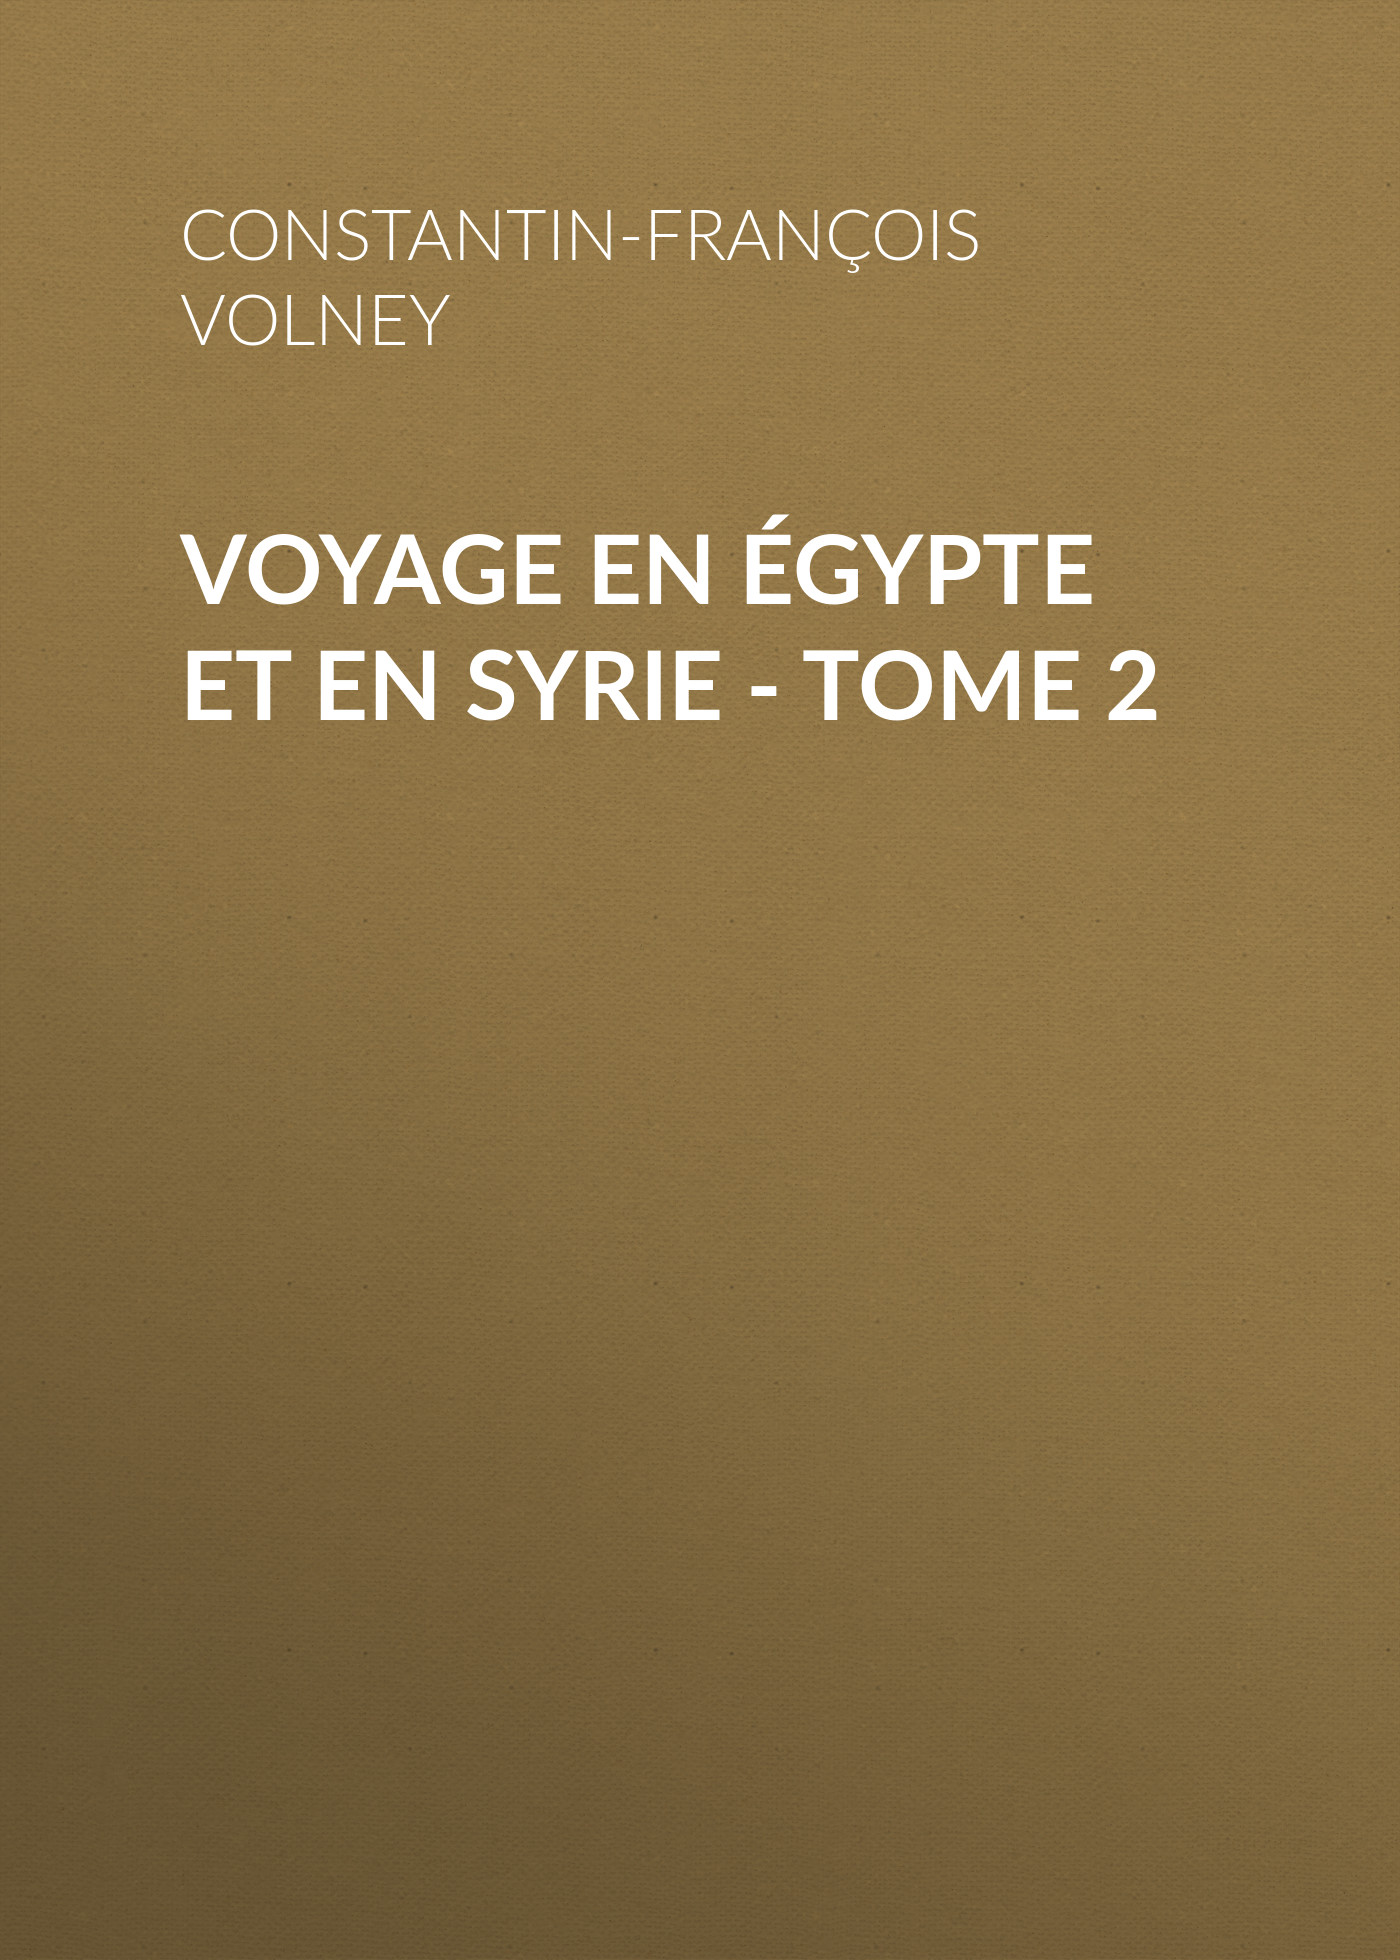 Voyage enÉgypte et en Syrie - Tome 2